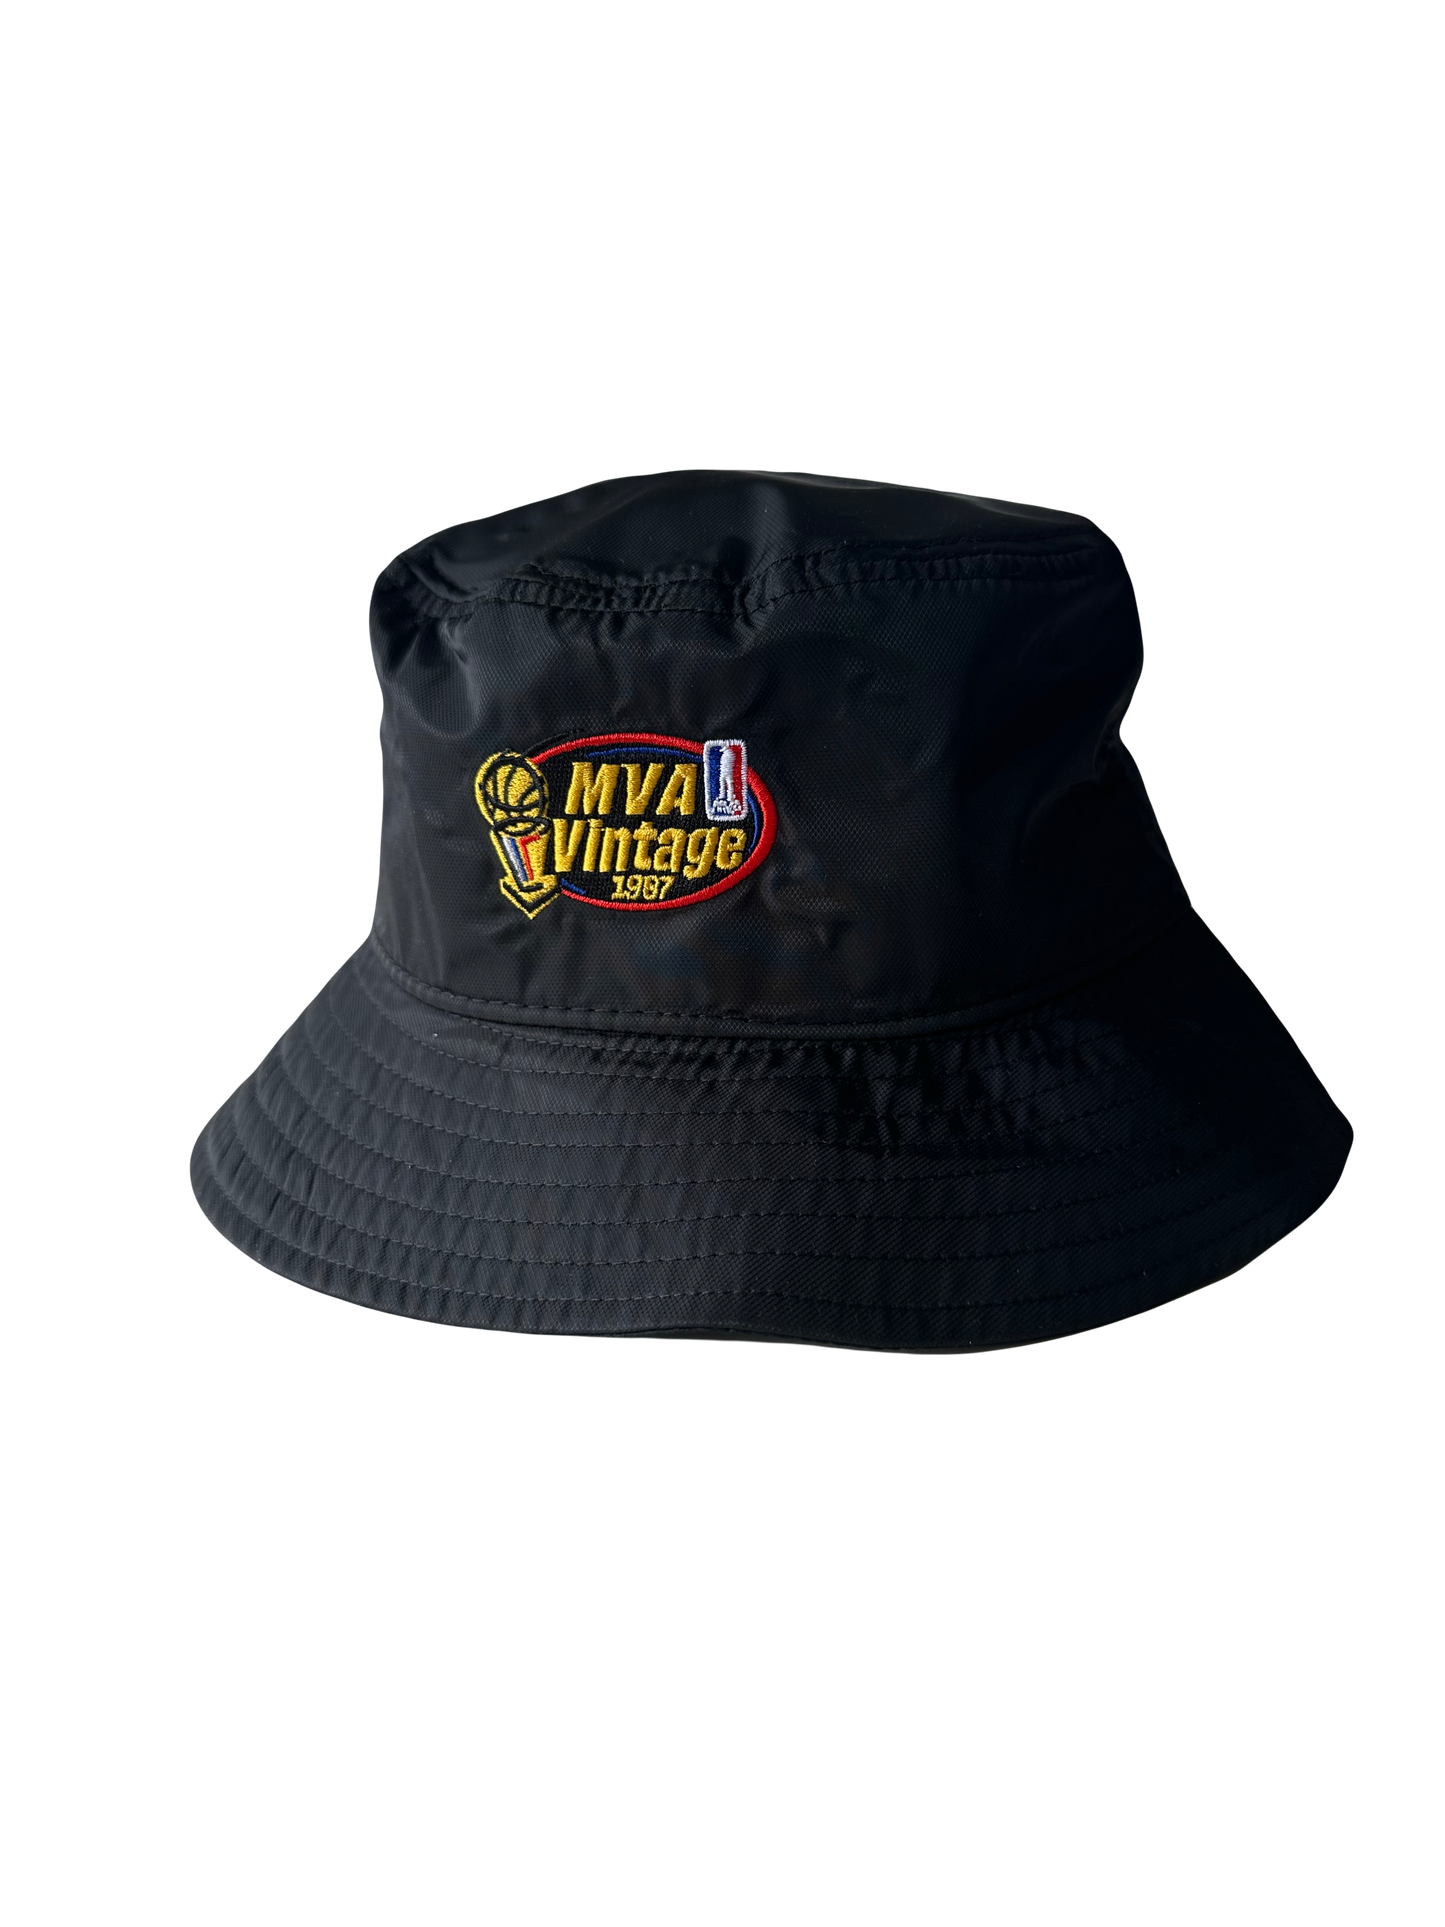 Women’s size bucket hat